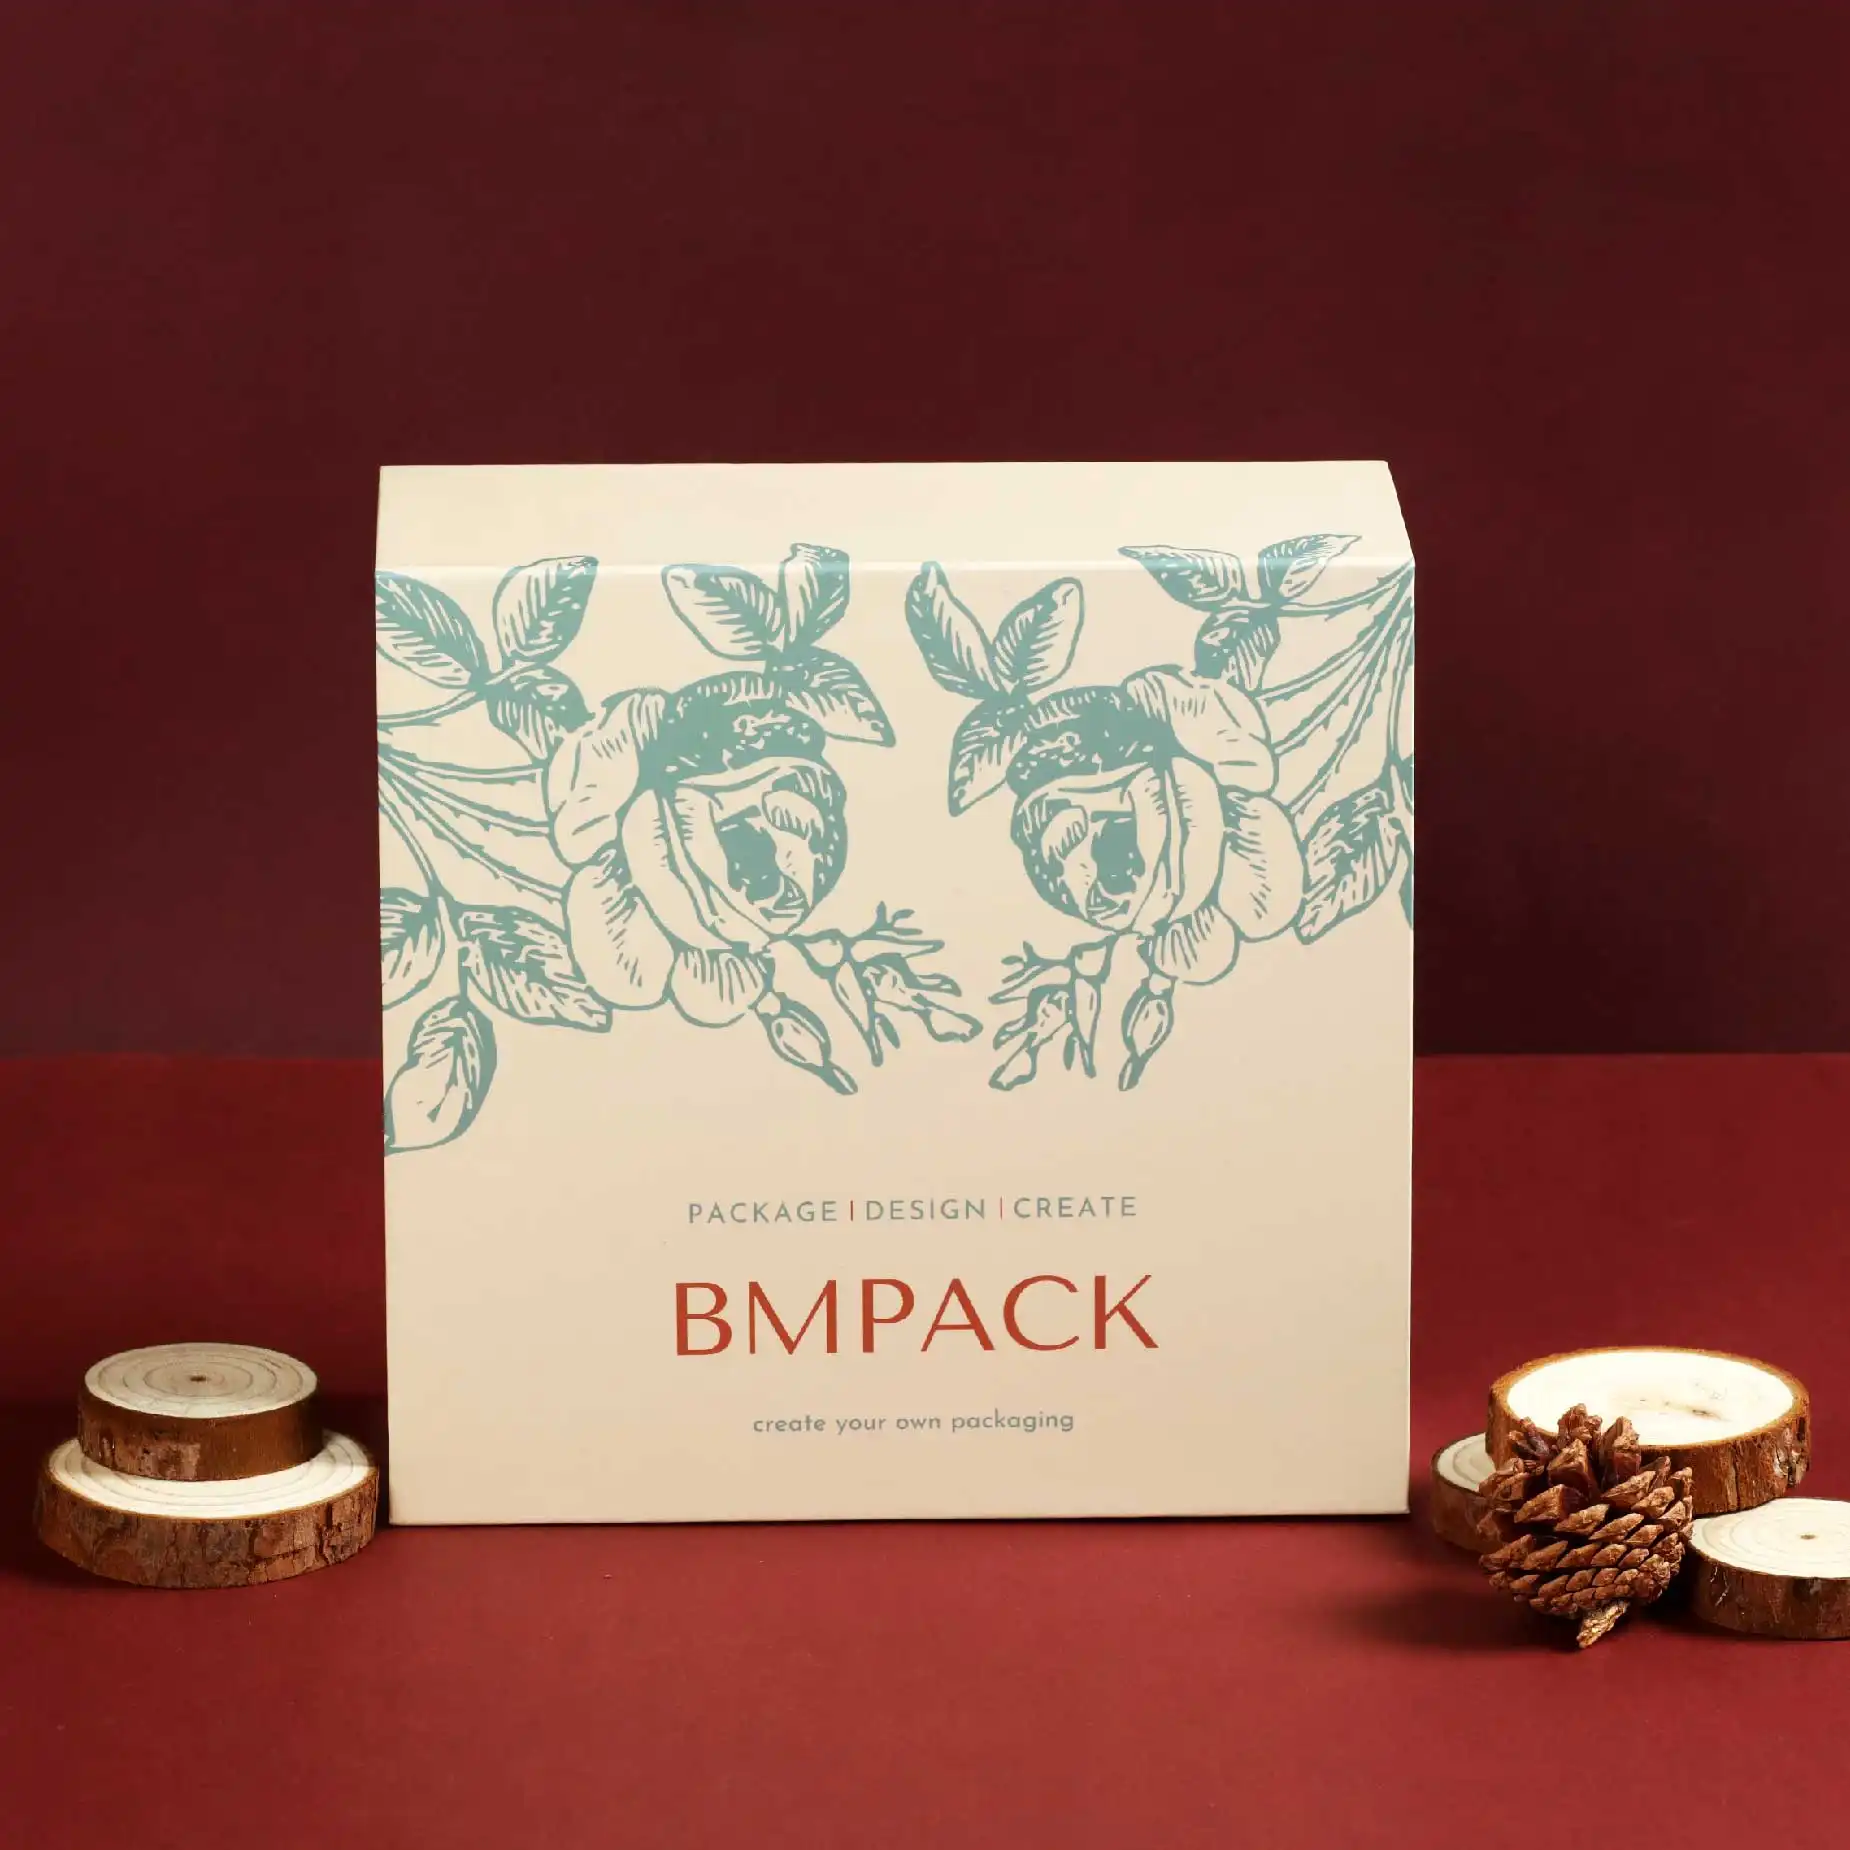 在深紅色的背景下，擺放了一個米白色的磁石書型硬盒，盒面印有"BM Pack"字眼和淺綠色的植物圖案，而盒的左右放置了少量原木片作為裝飾。